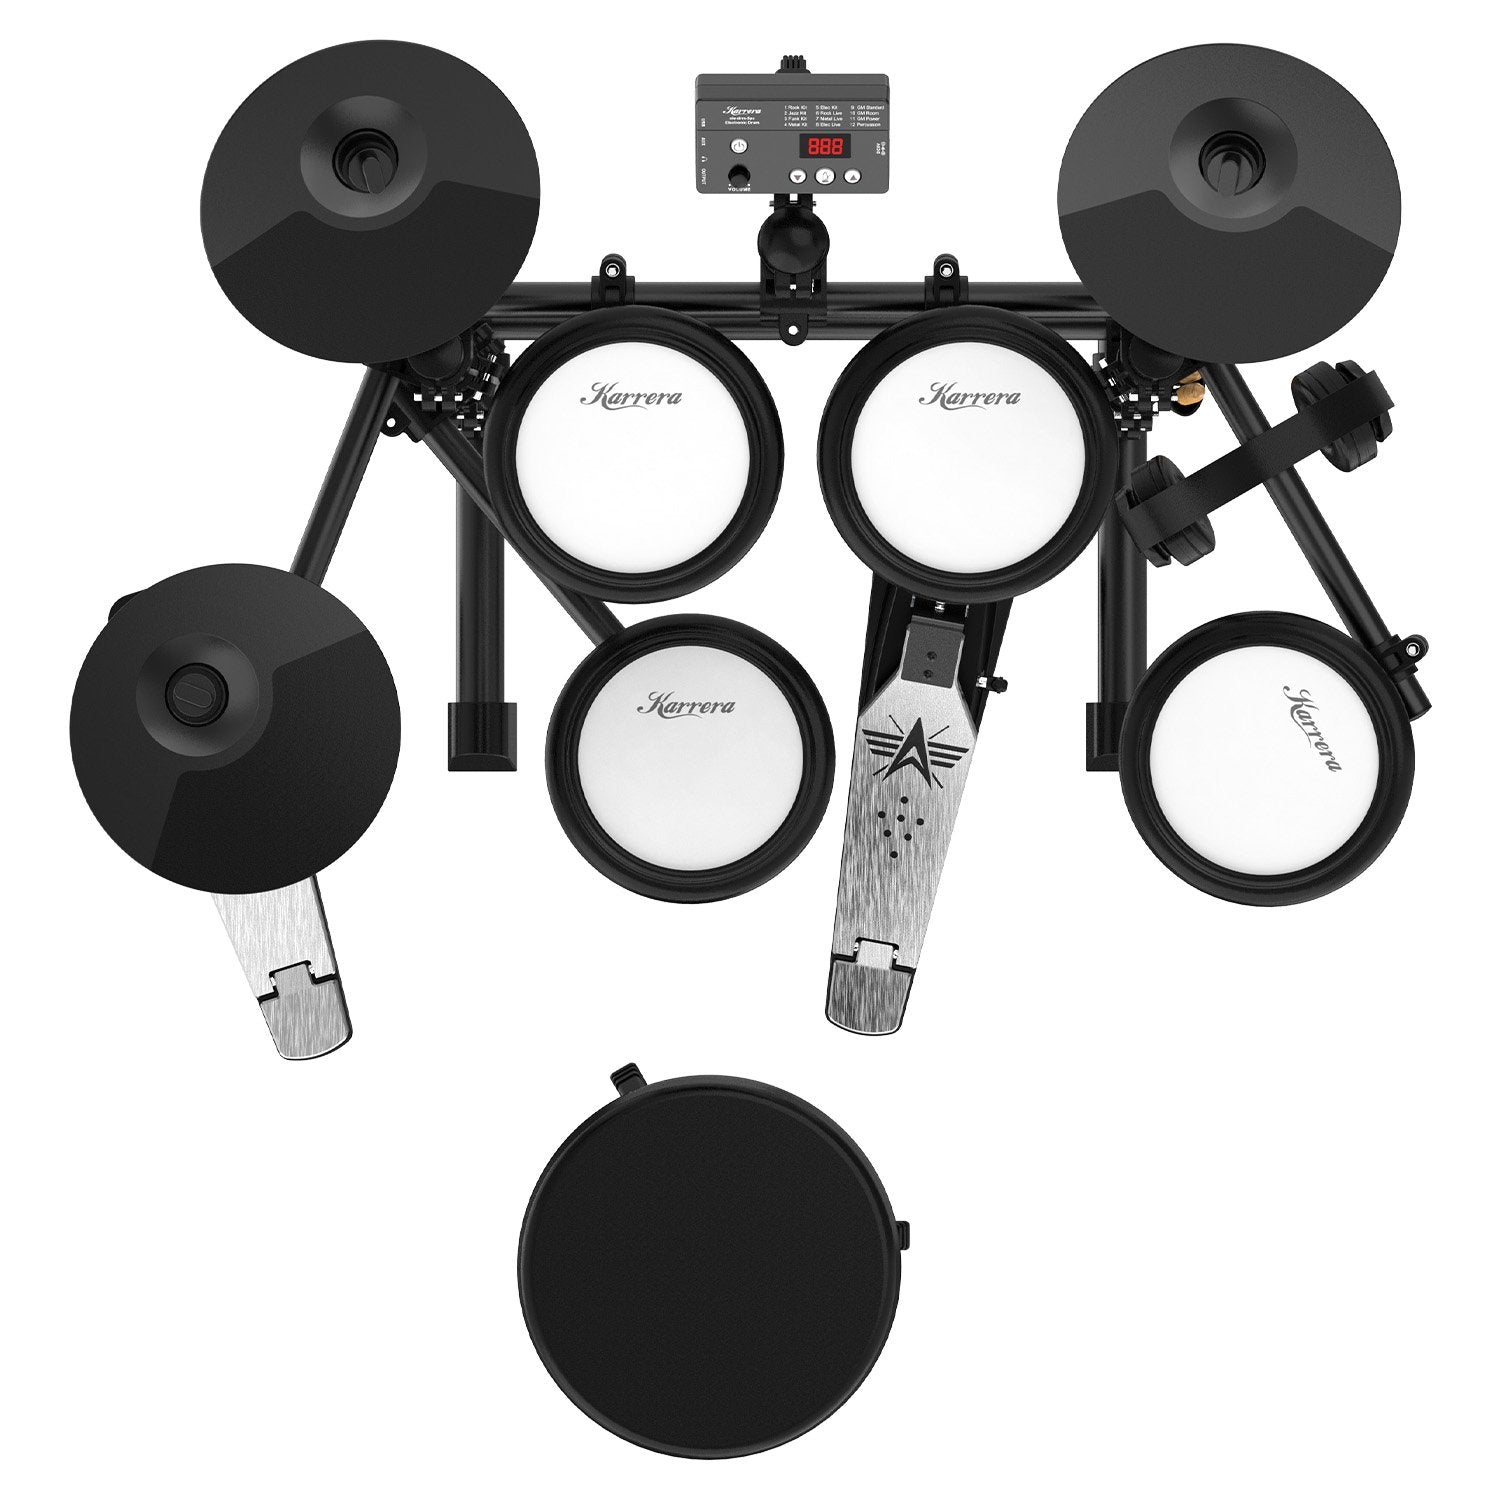 Mesh Pads, 12 Sound Modes, USB Electronic Drum Kit – Karrera